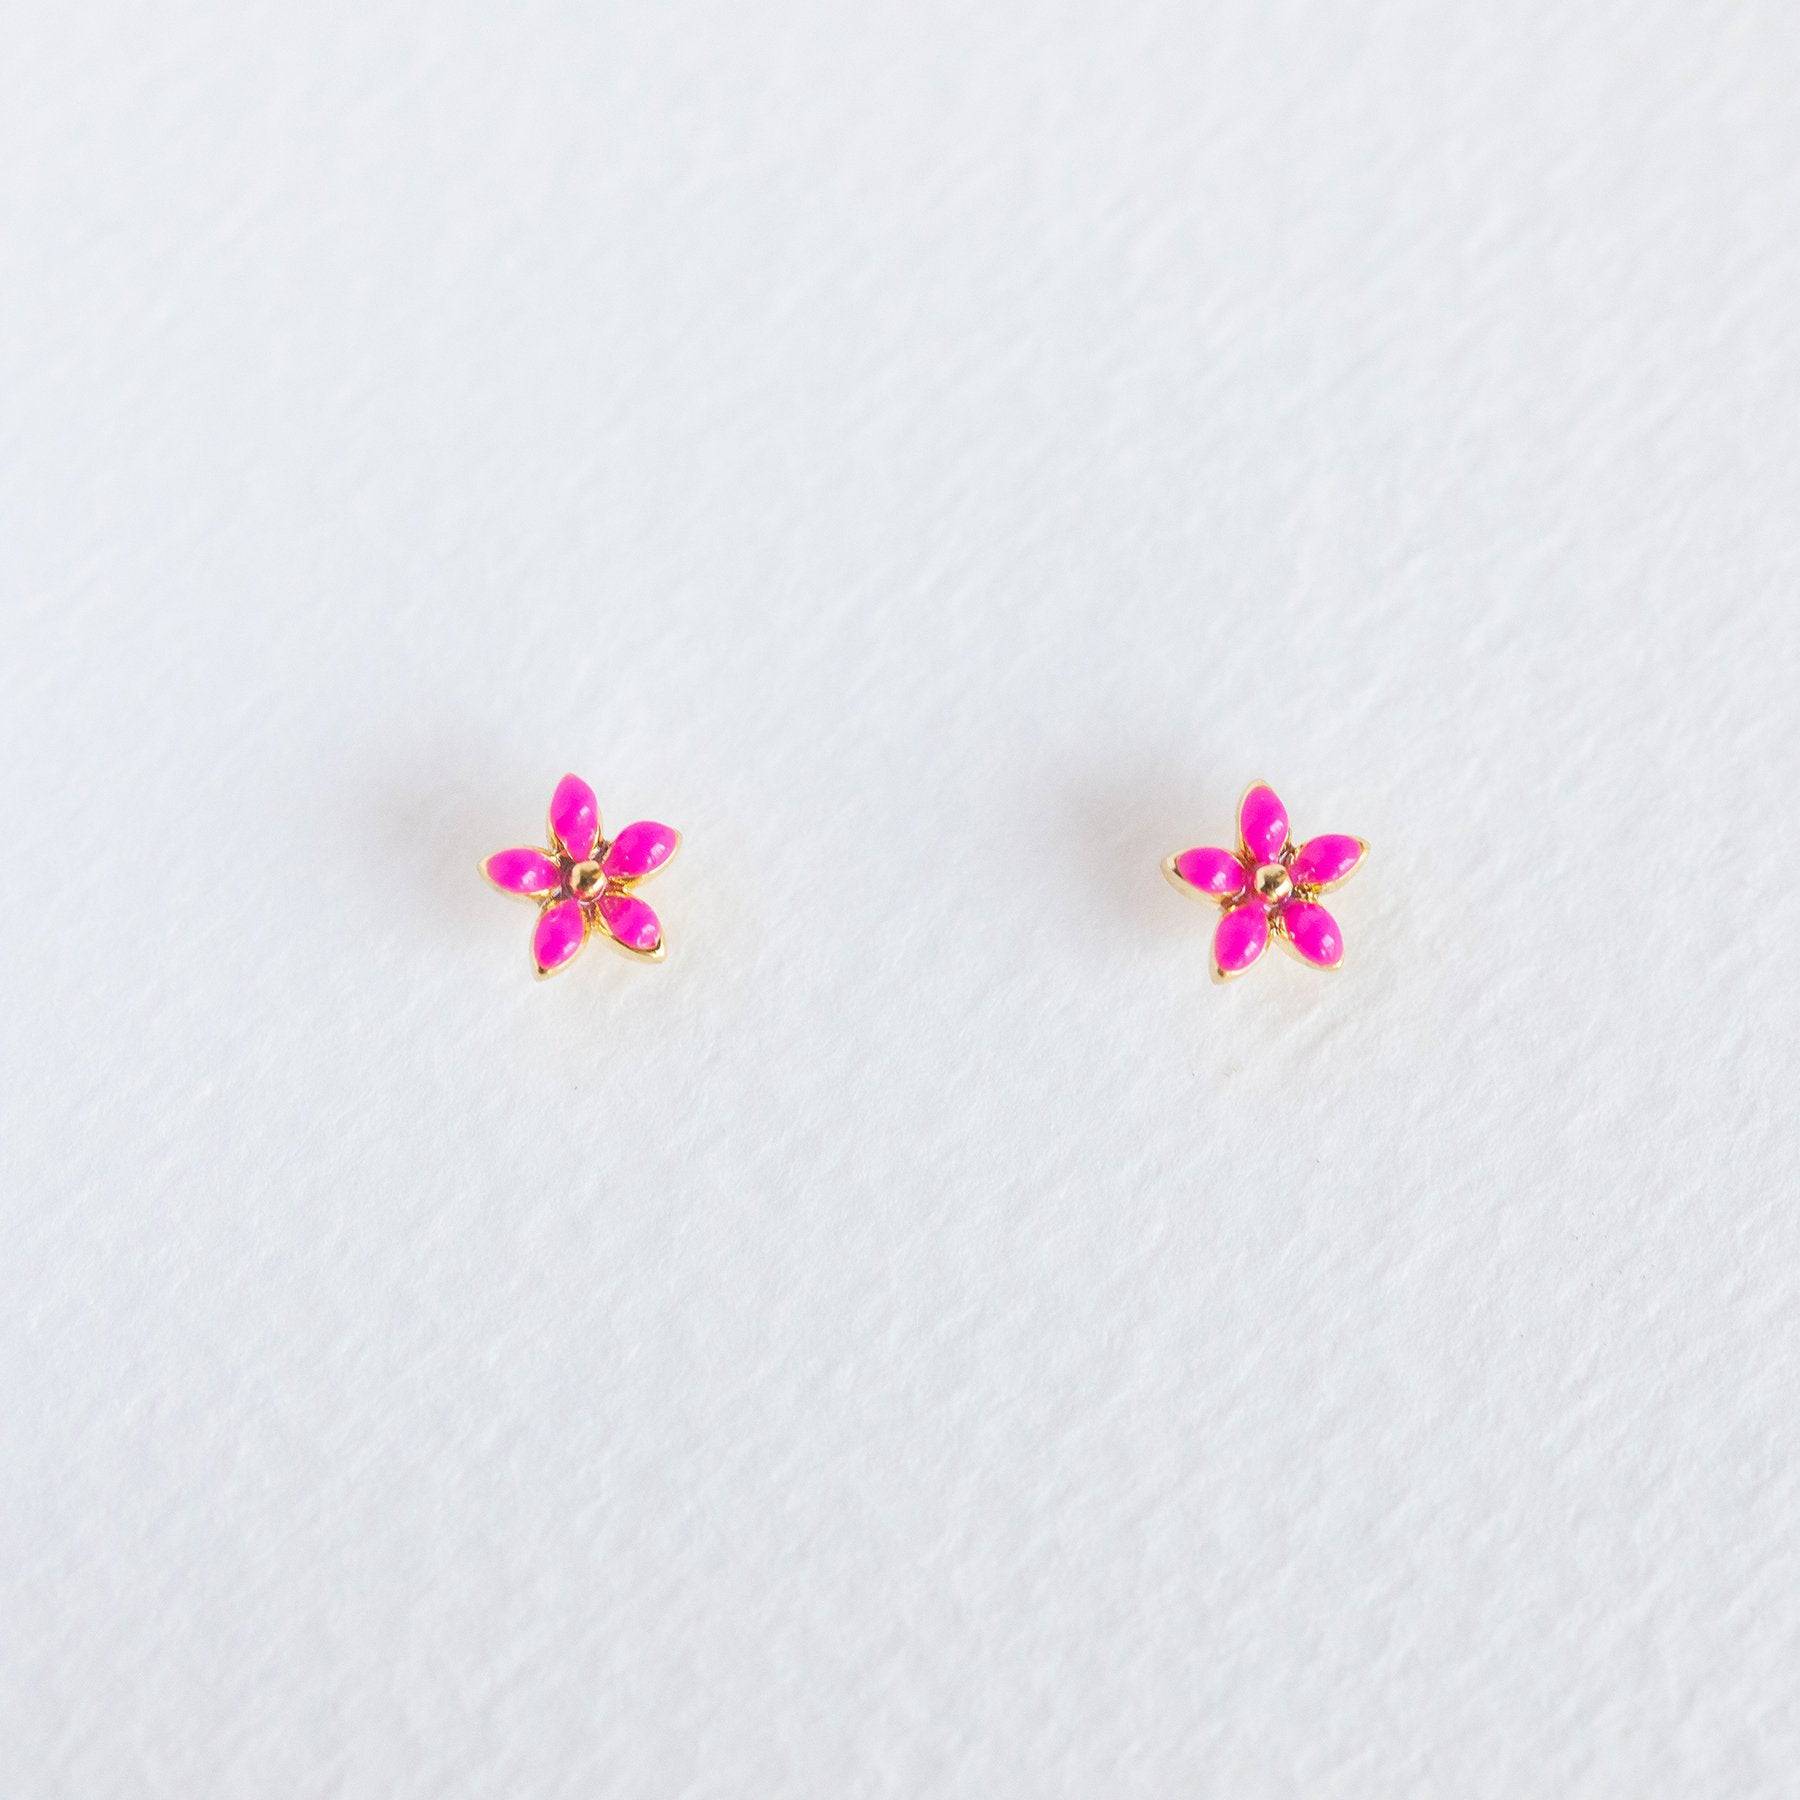 Hot Pink Enamel Flower Studs - Gold - Twinkle Twinkle Little One